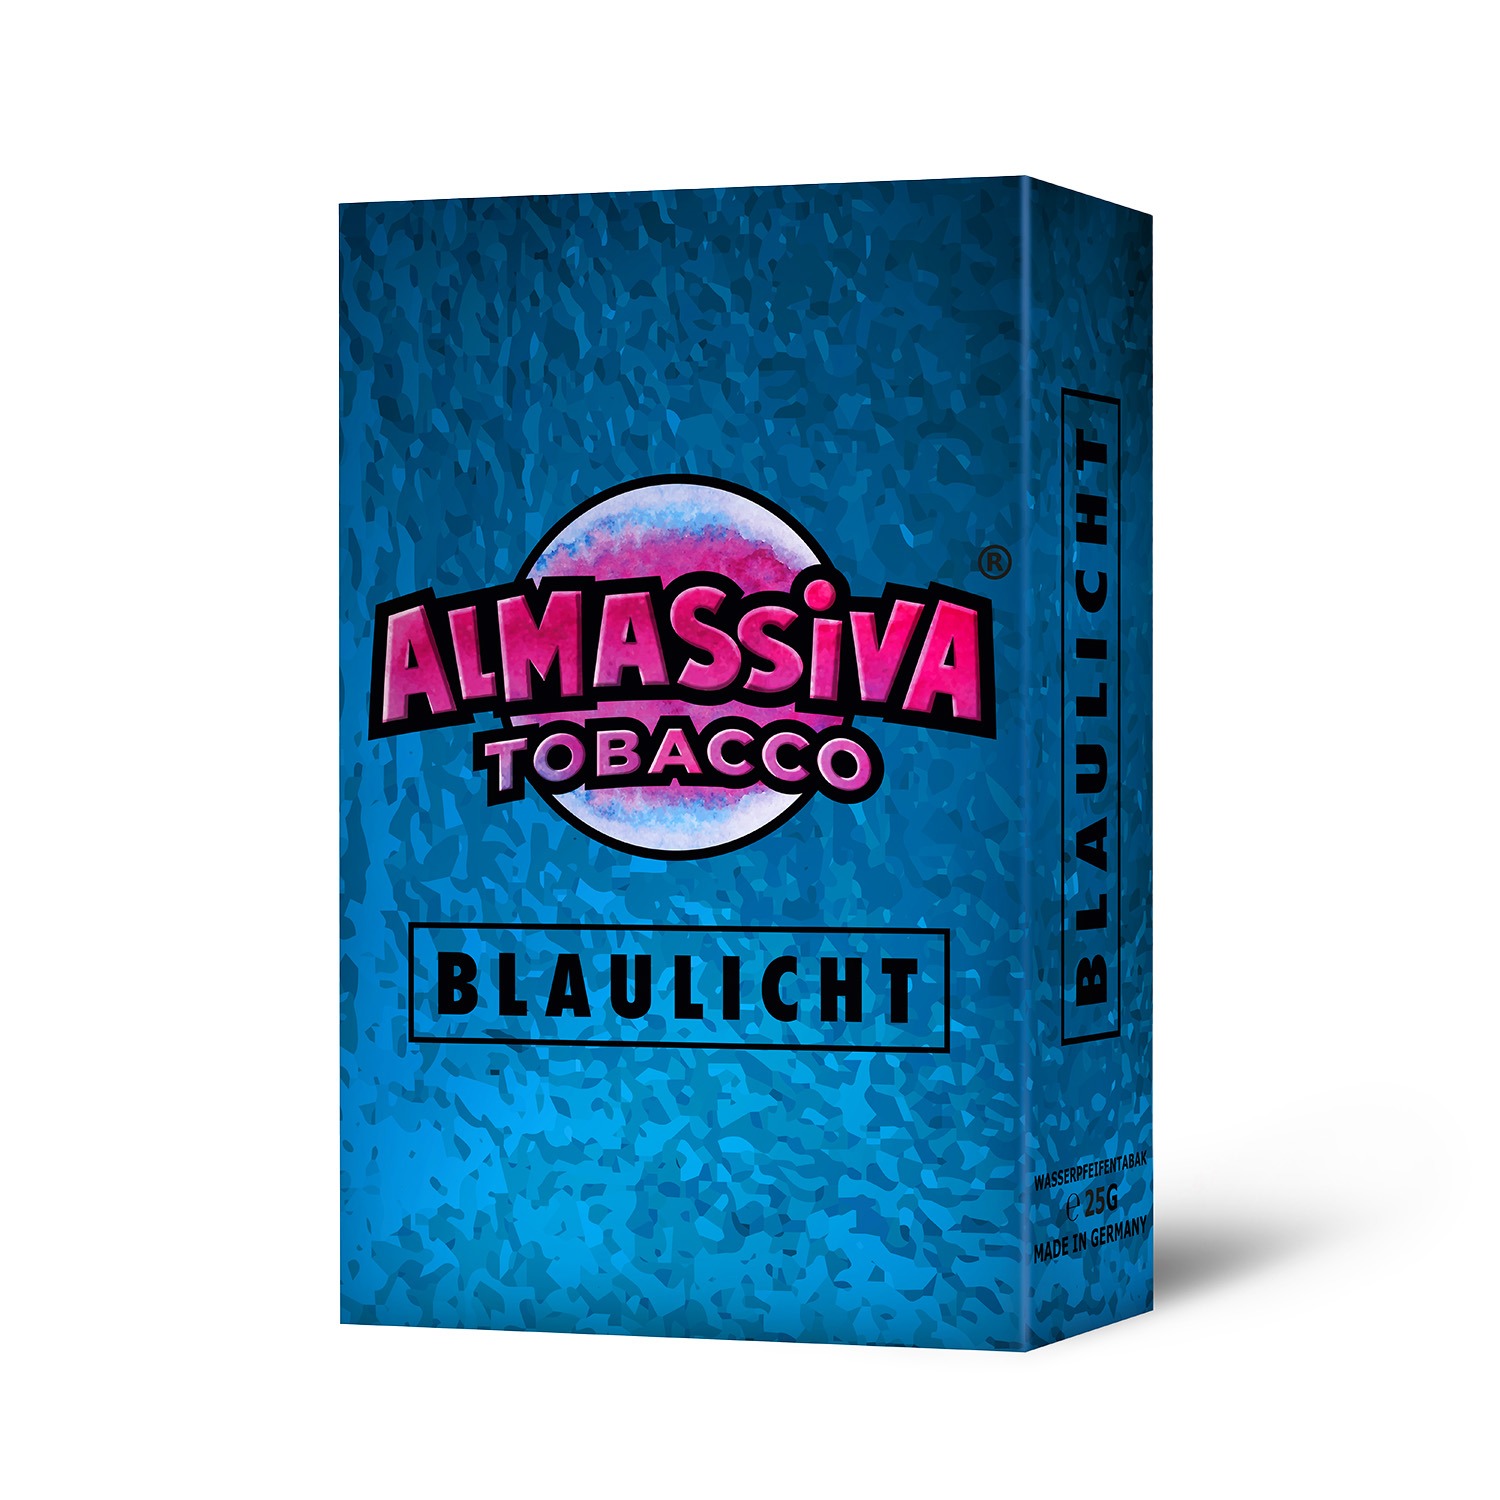 ALMASSIVA - BLAULICHT